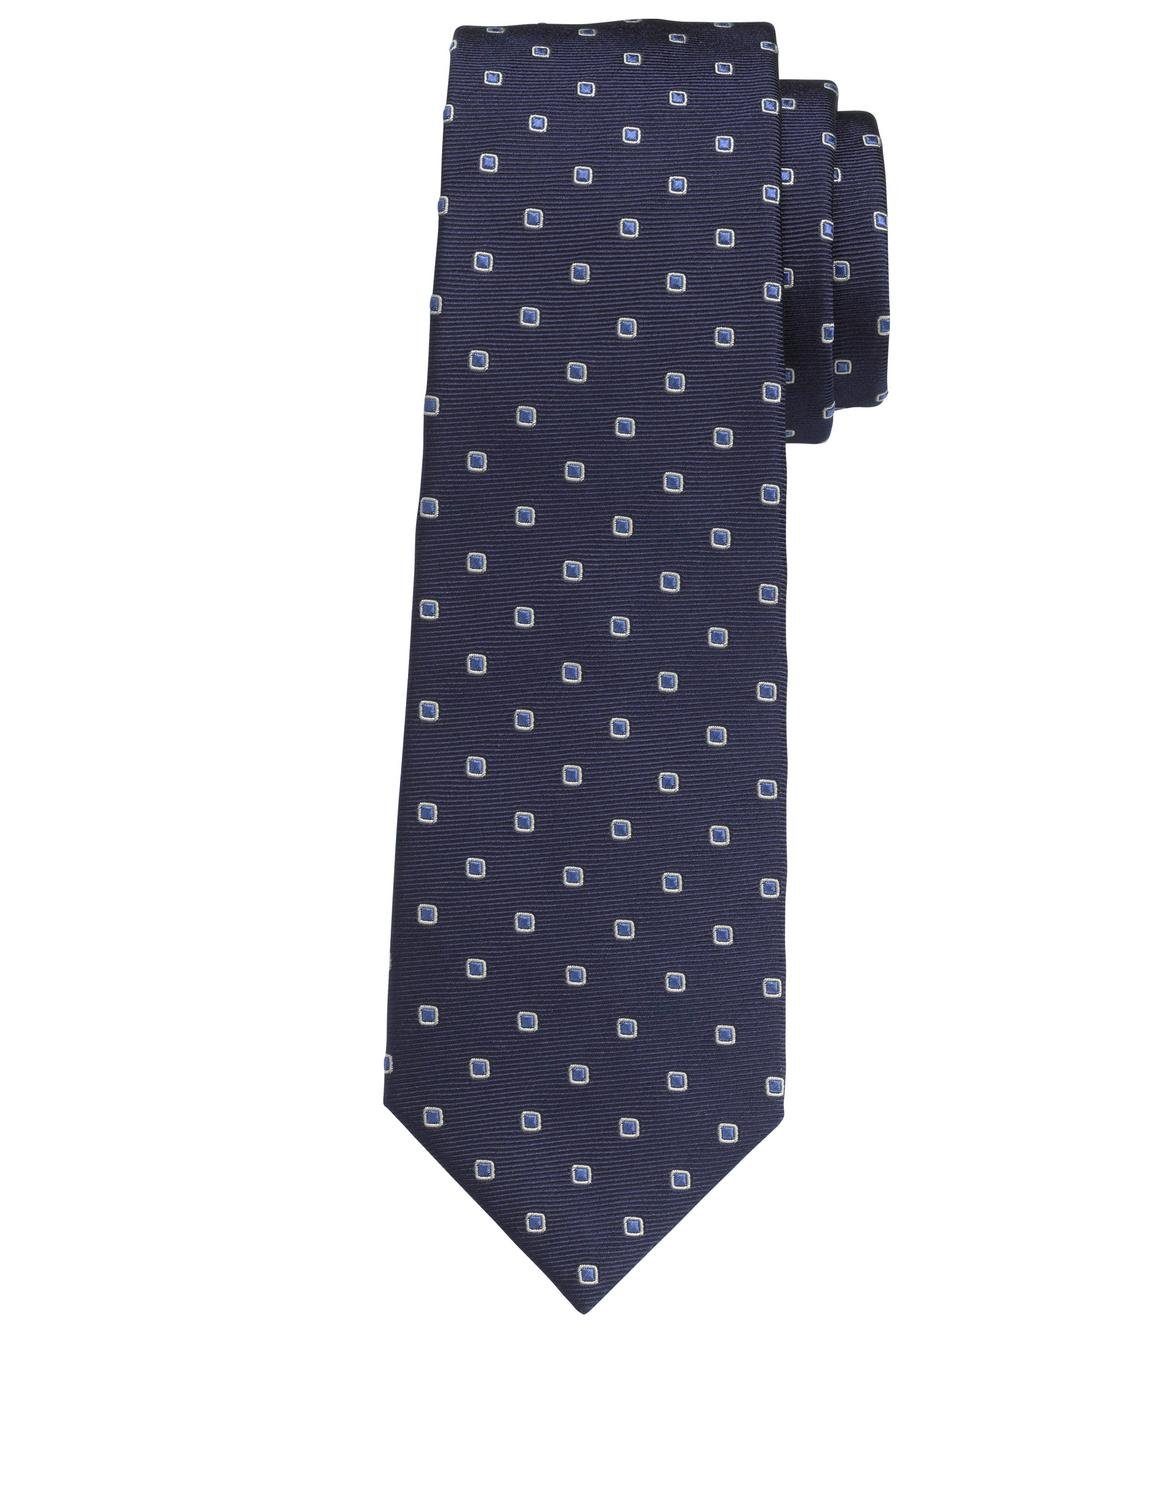 OLYMP Krawatte 8704/43 Krawatten